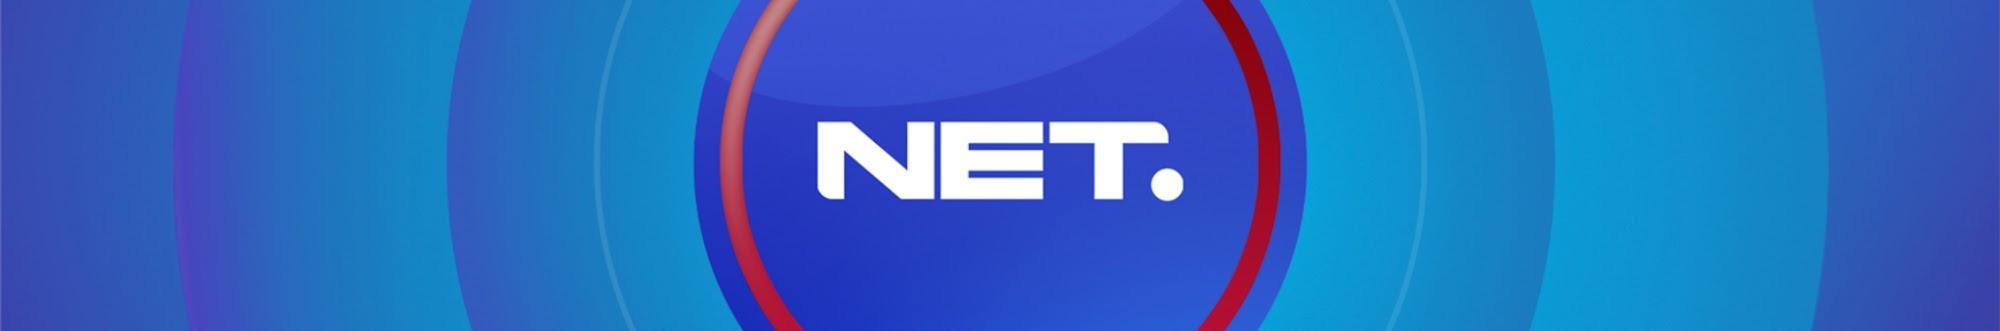 Official NET News